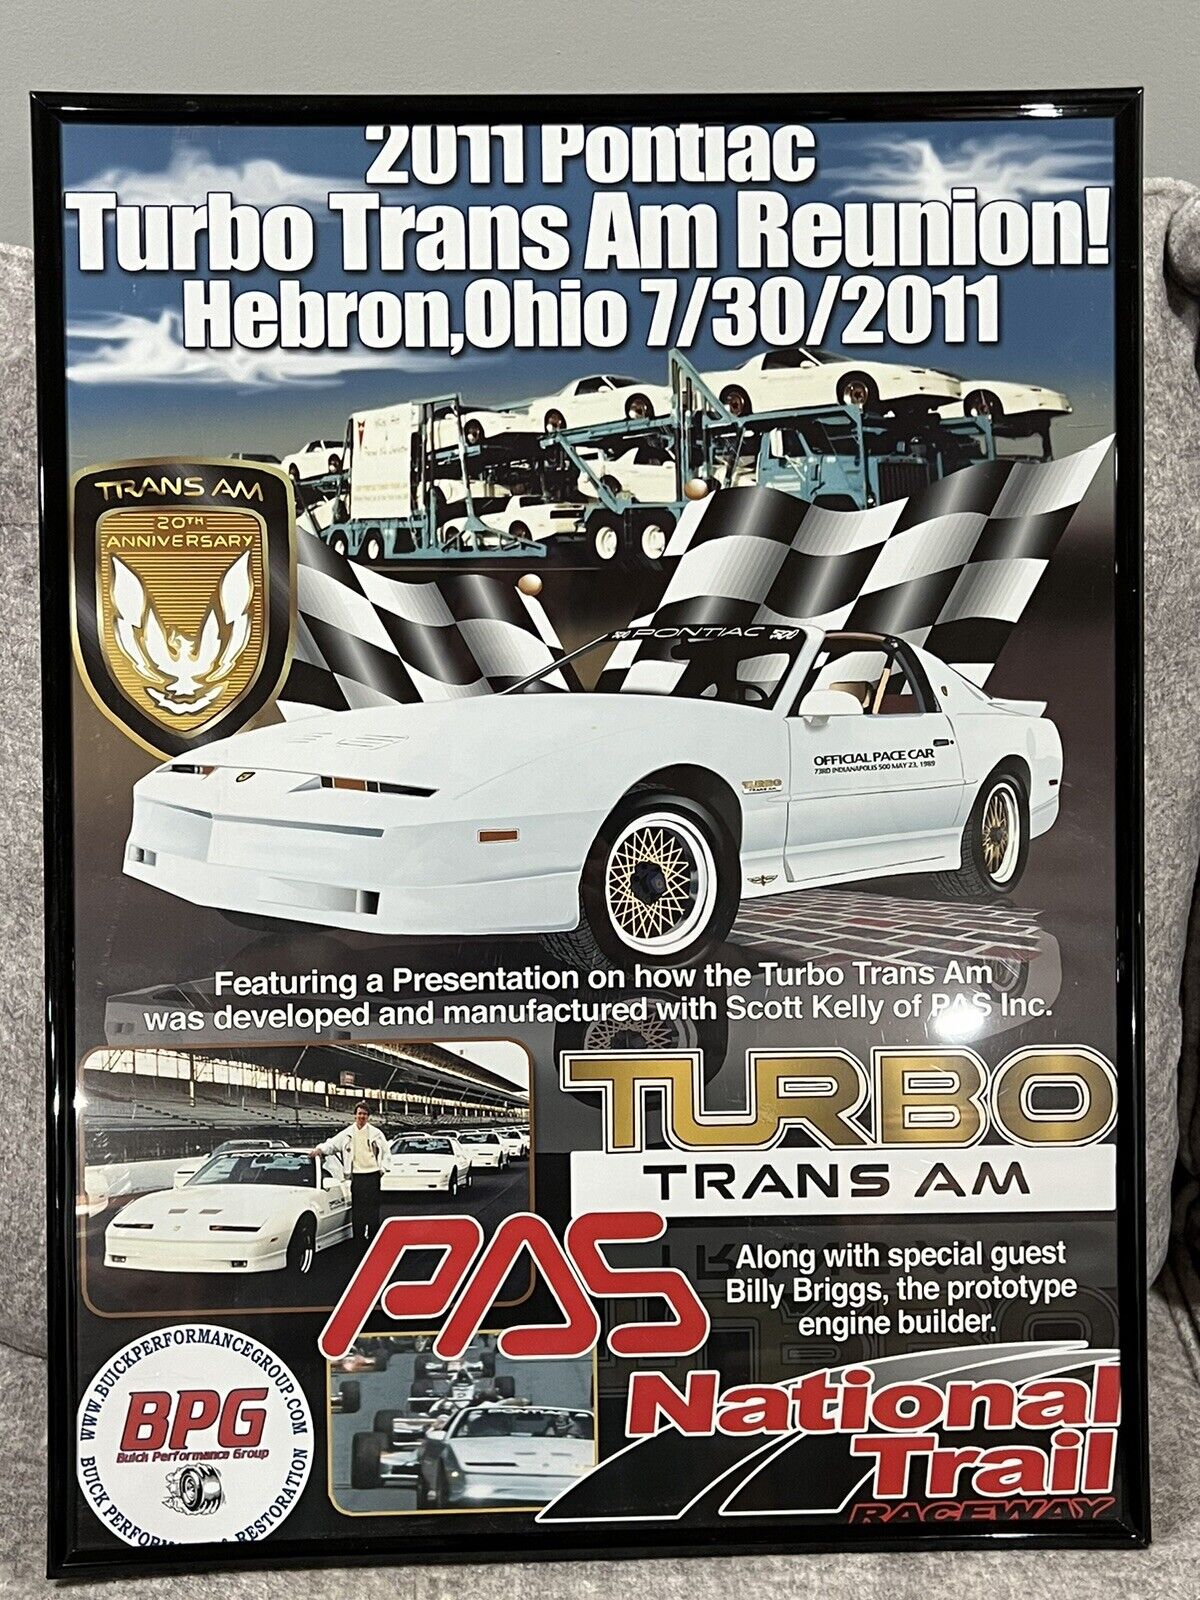 Original “2011 Pontiac Turbo Trans Am Reunion” Official Poster - 1989 20th TTA